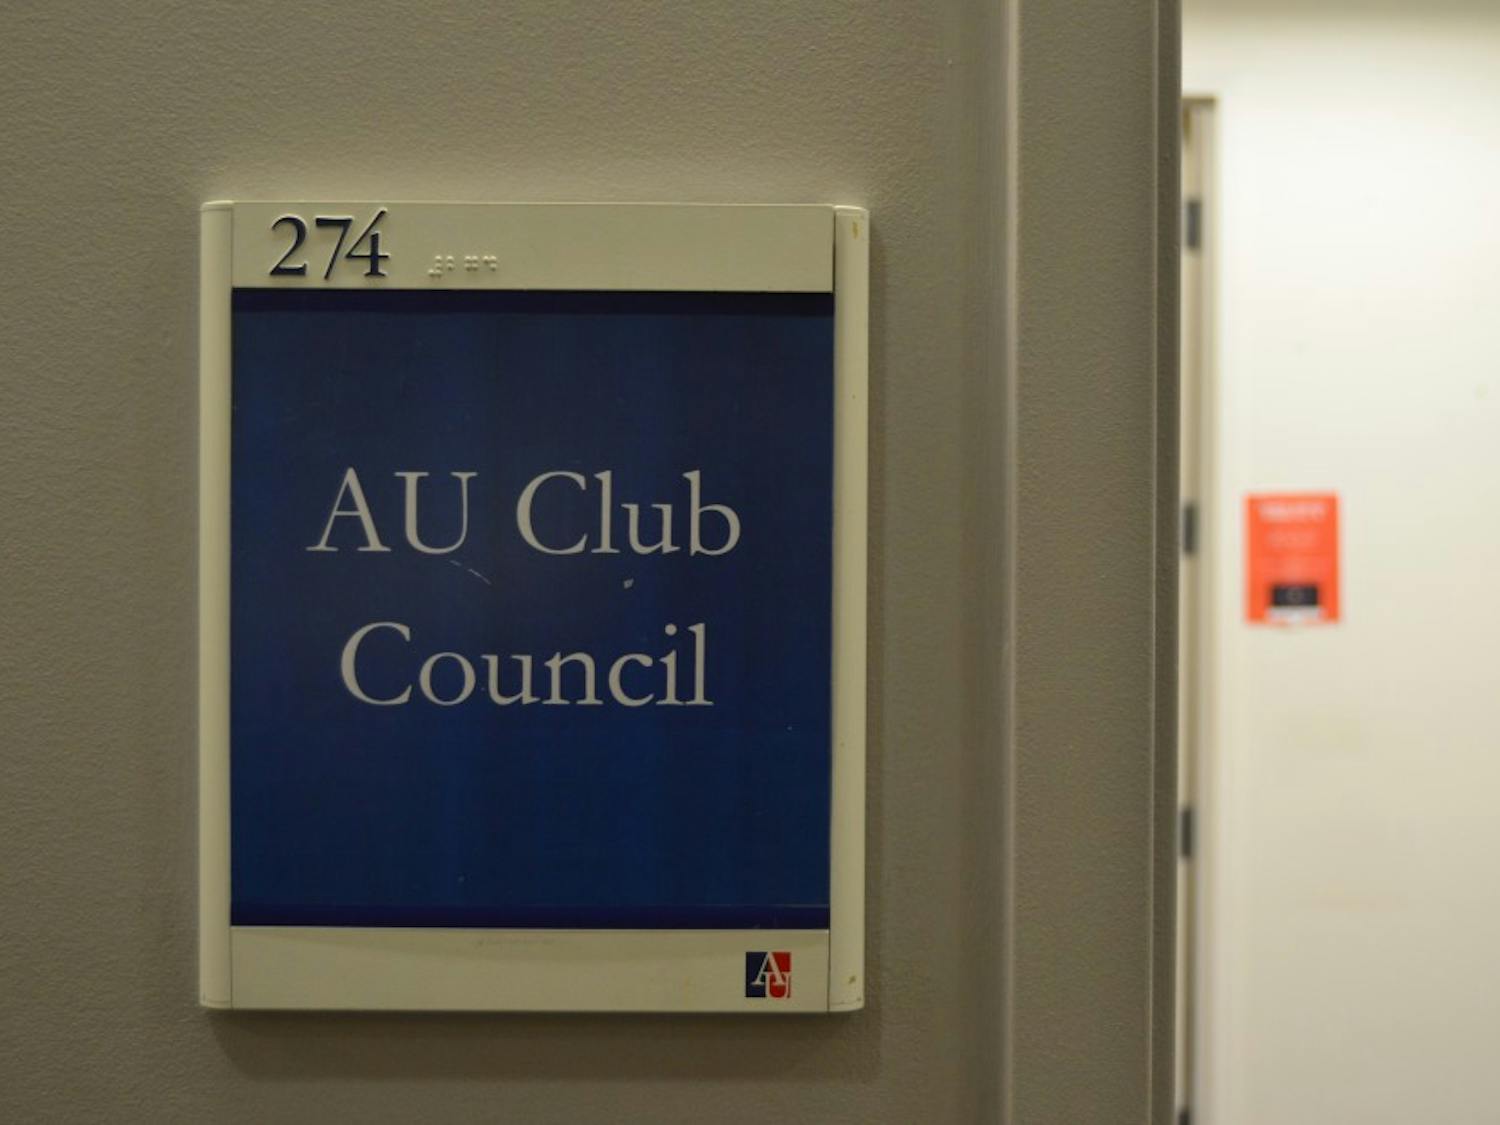 AUCC (Club Council)